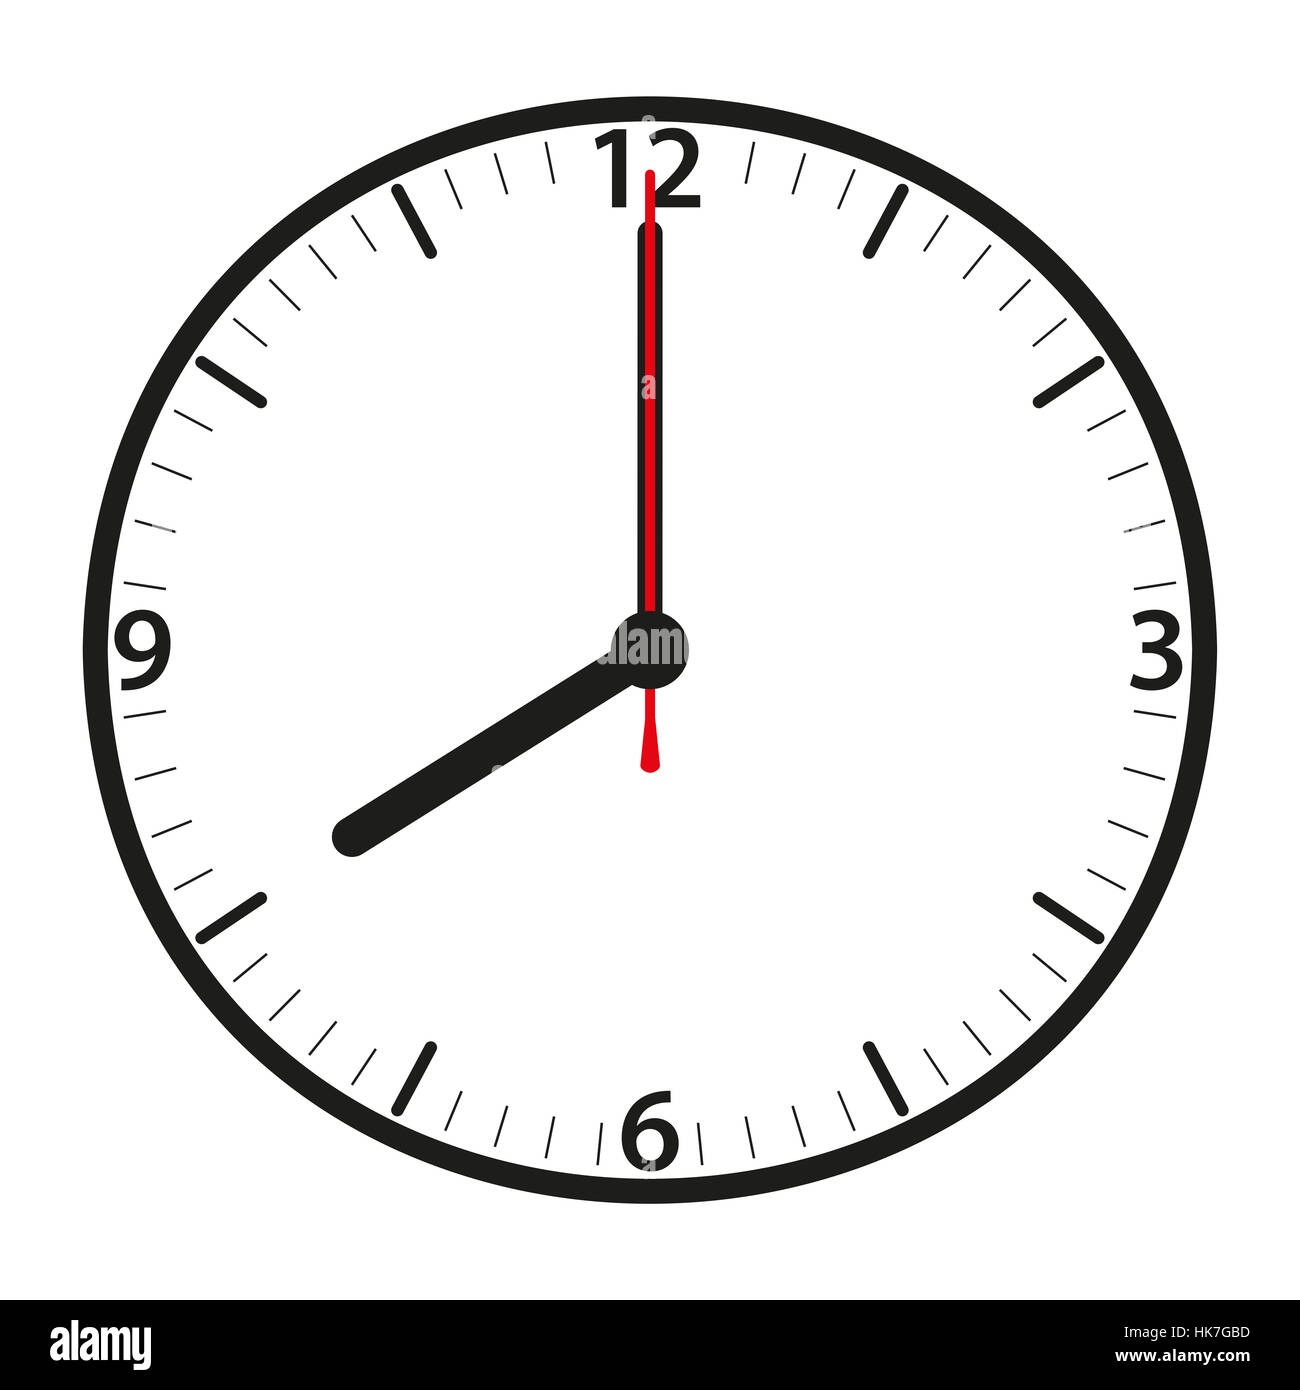 Uhr, Datum, Uhrzeit, Zeitanzeige, Sekunden, Minuten, Stunden, Stunde,  Minute Stockfotografie - Alamy